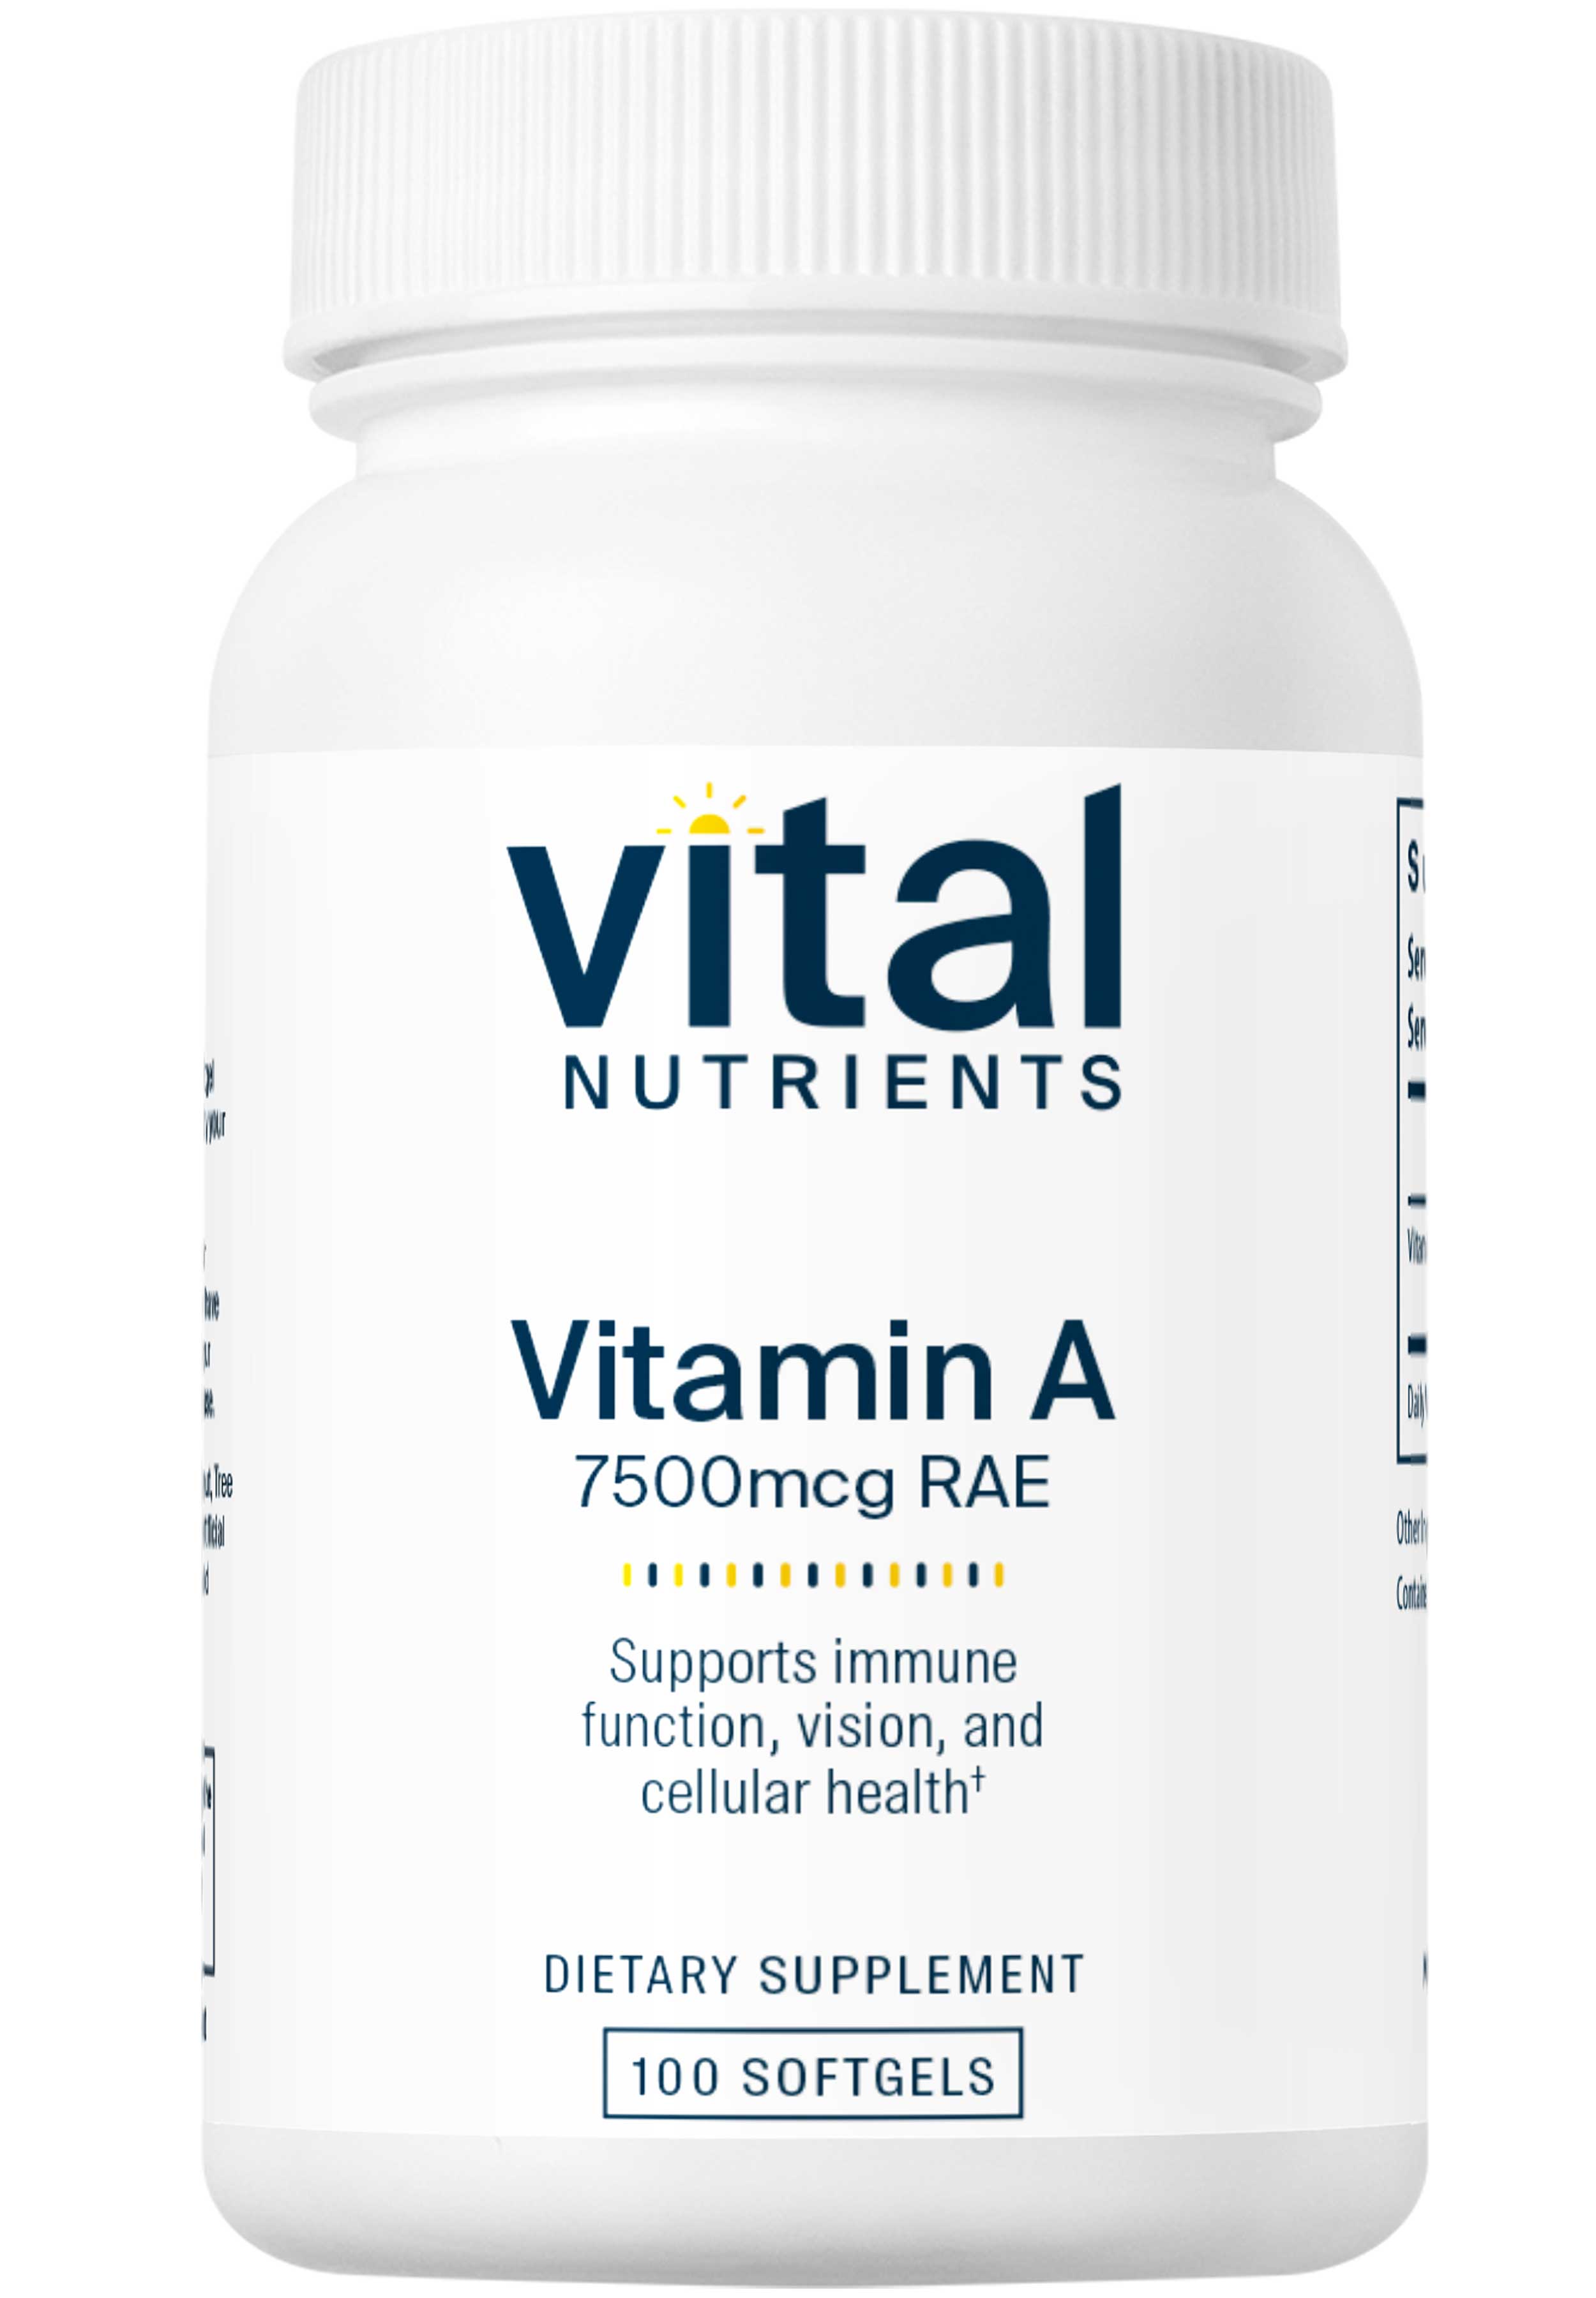 Vital Nutrients Vitamin A 7500mcg RAE